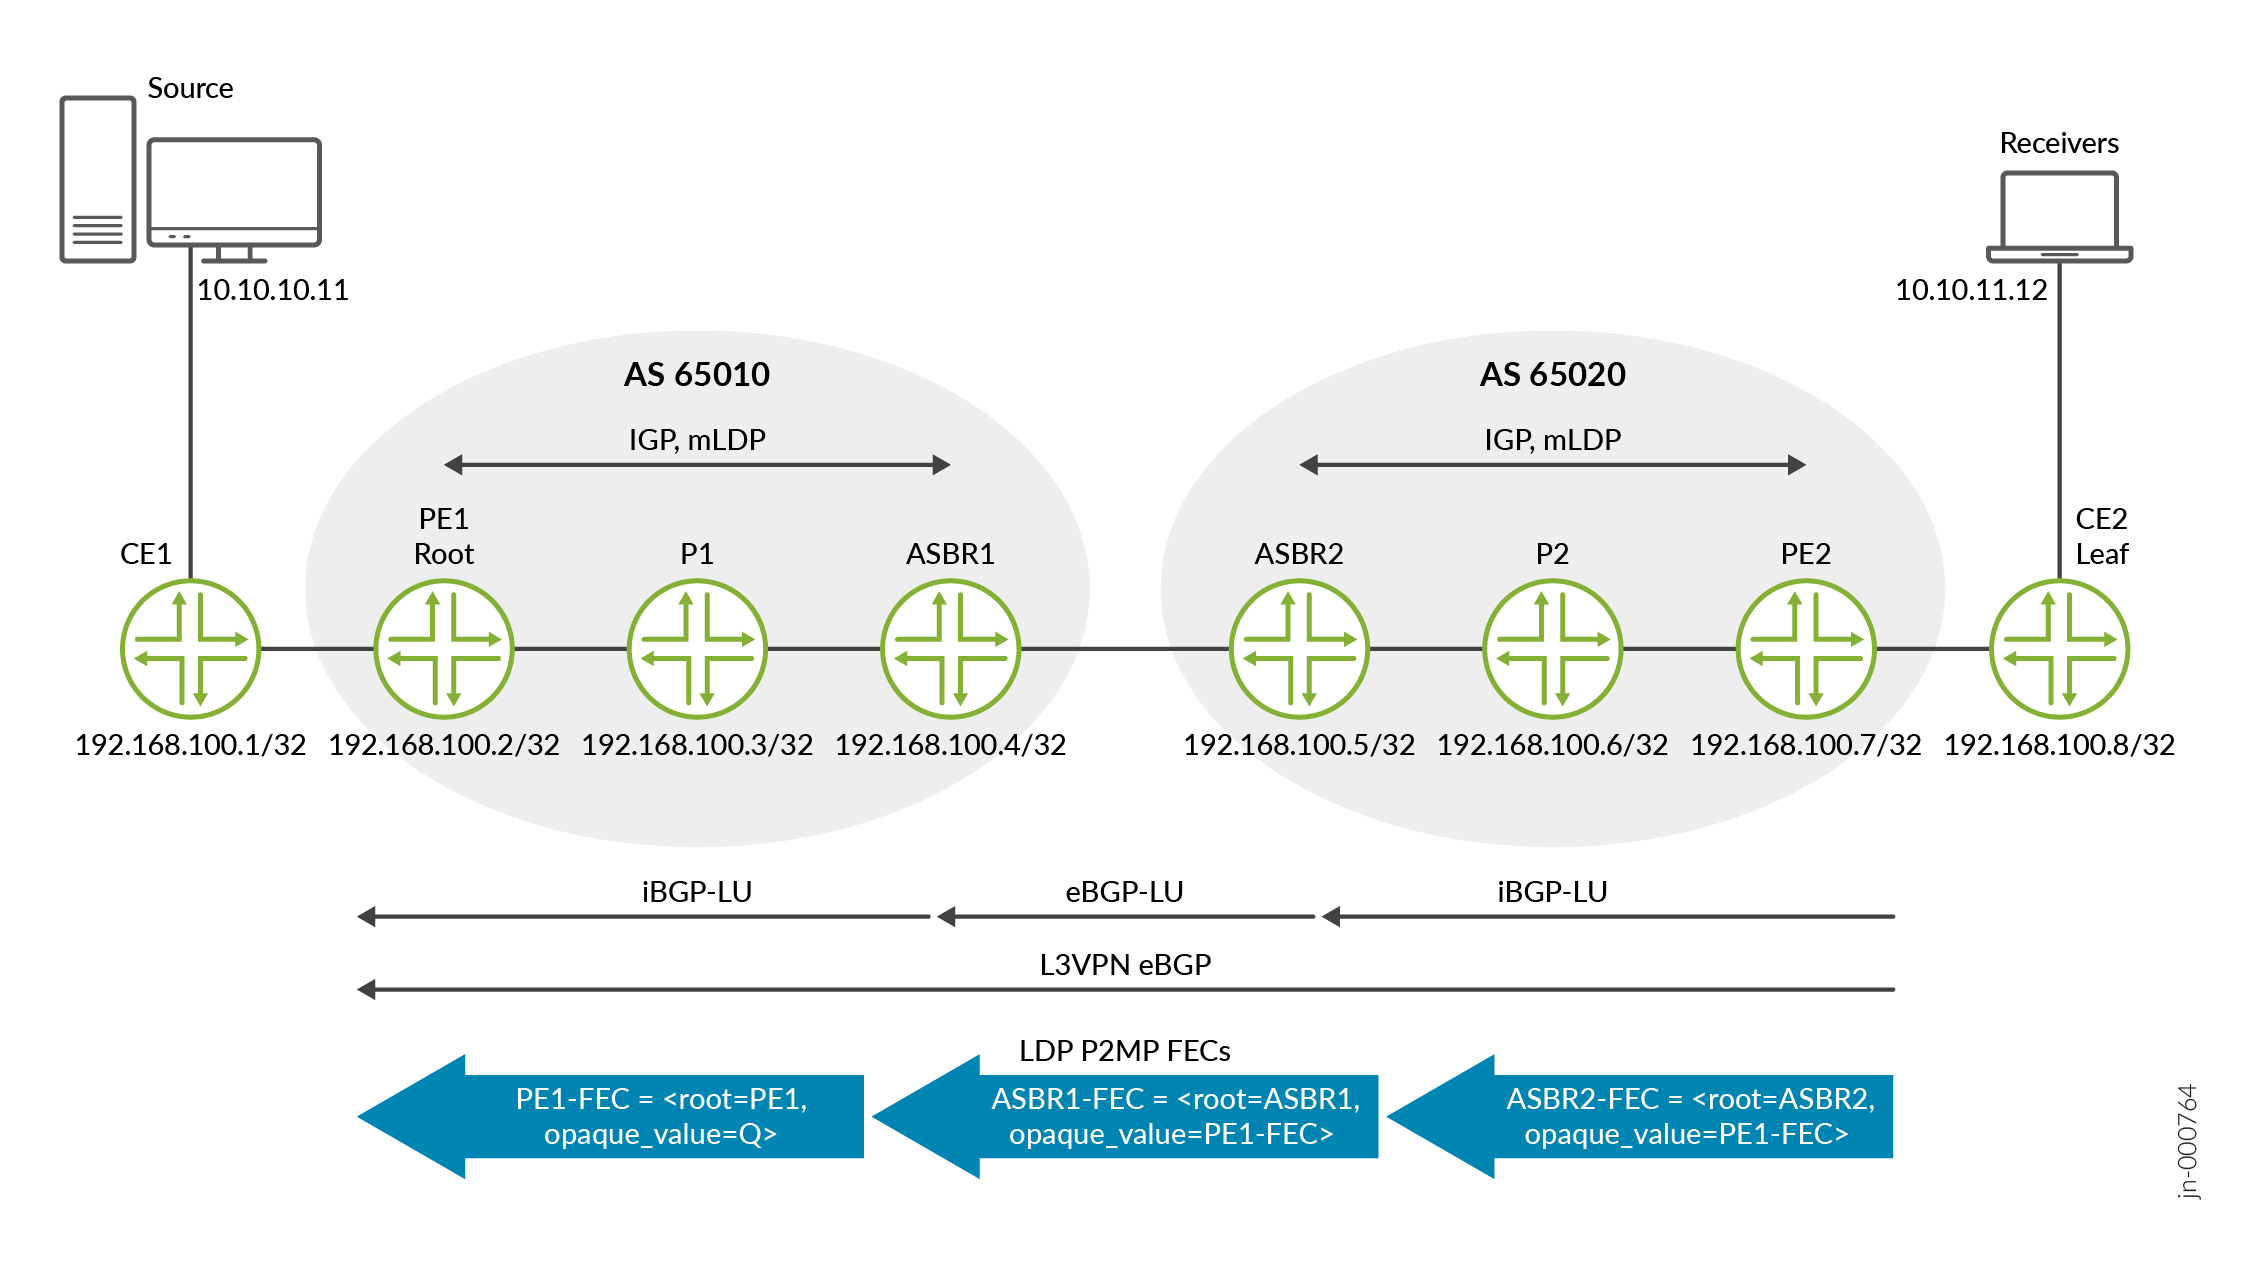 MLDP FEC para Inter-AS com valor opaco recursivo no cenário da Opção C de MVPN